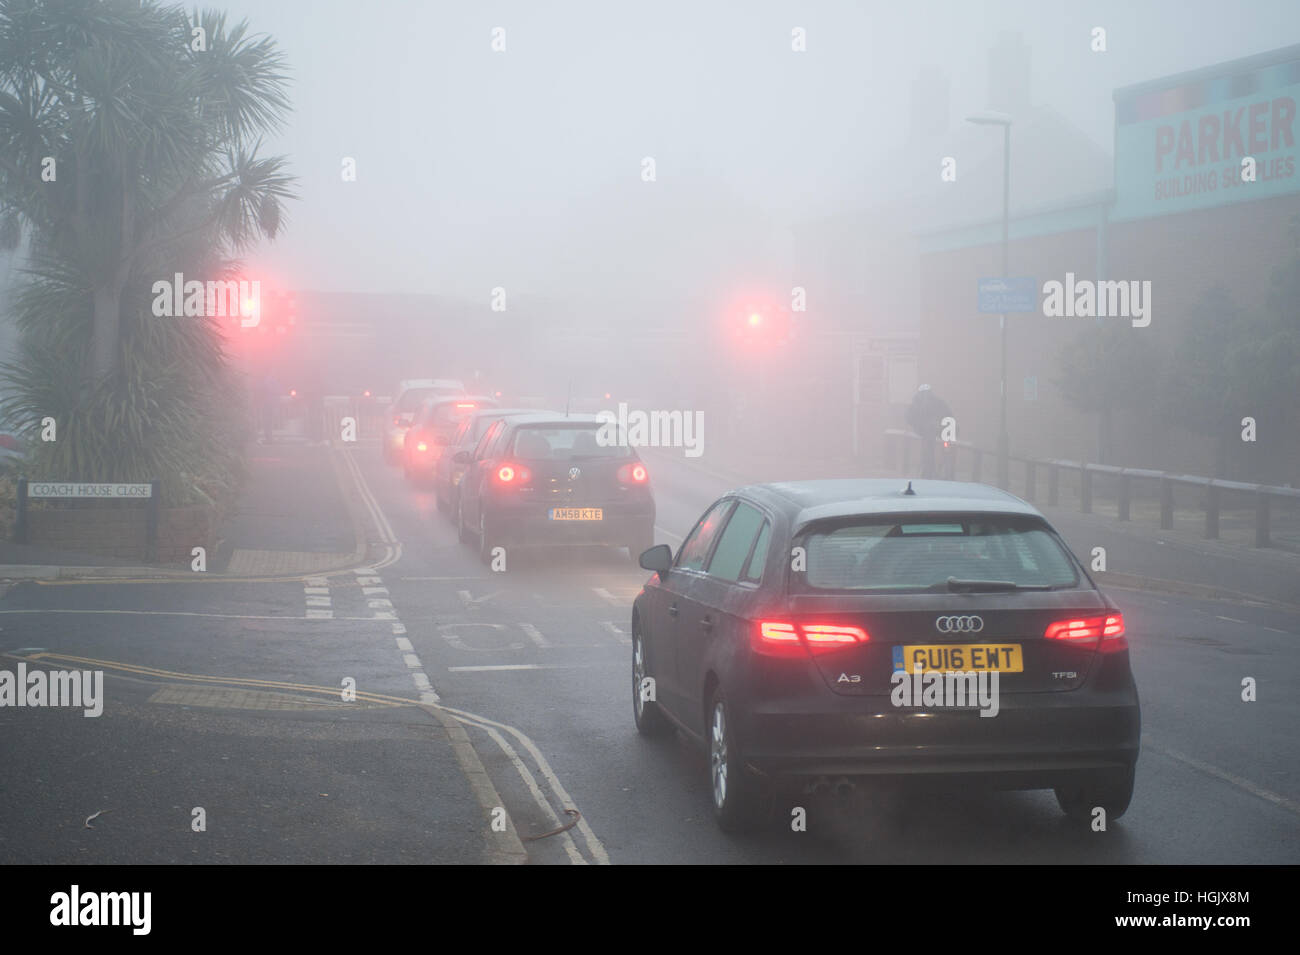 Un matin brumeux sur les voitures d'attente attendre dans une ligne de la circulation à un passage à niveau dans le West Sussex, Angleterre, Royaume-Uni. Banque D'Images